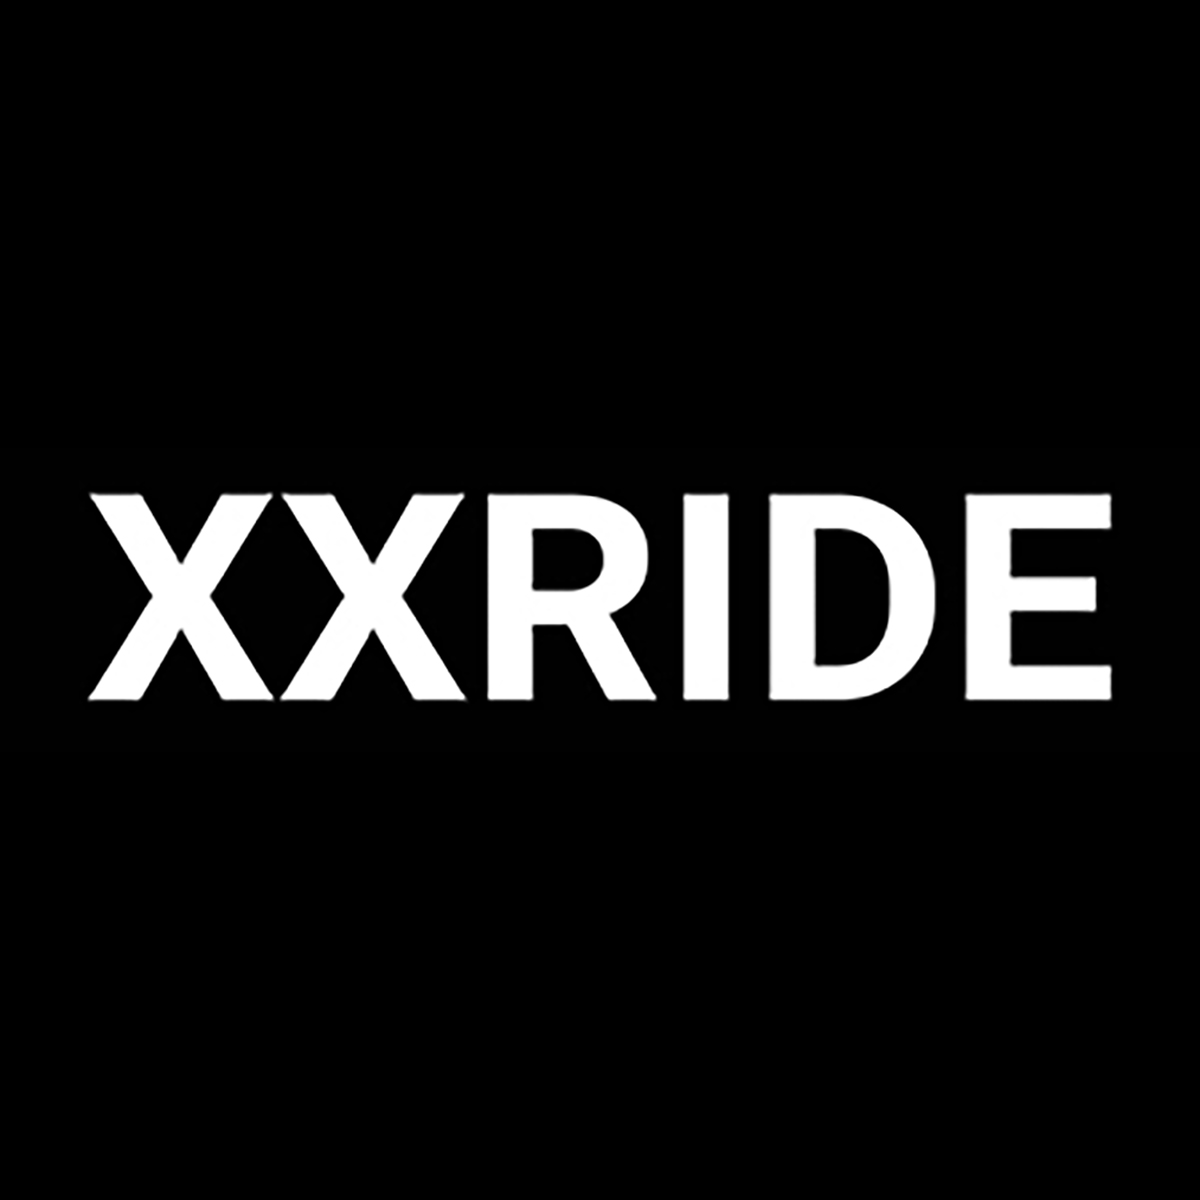 XXRIDE Logo